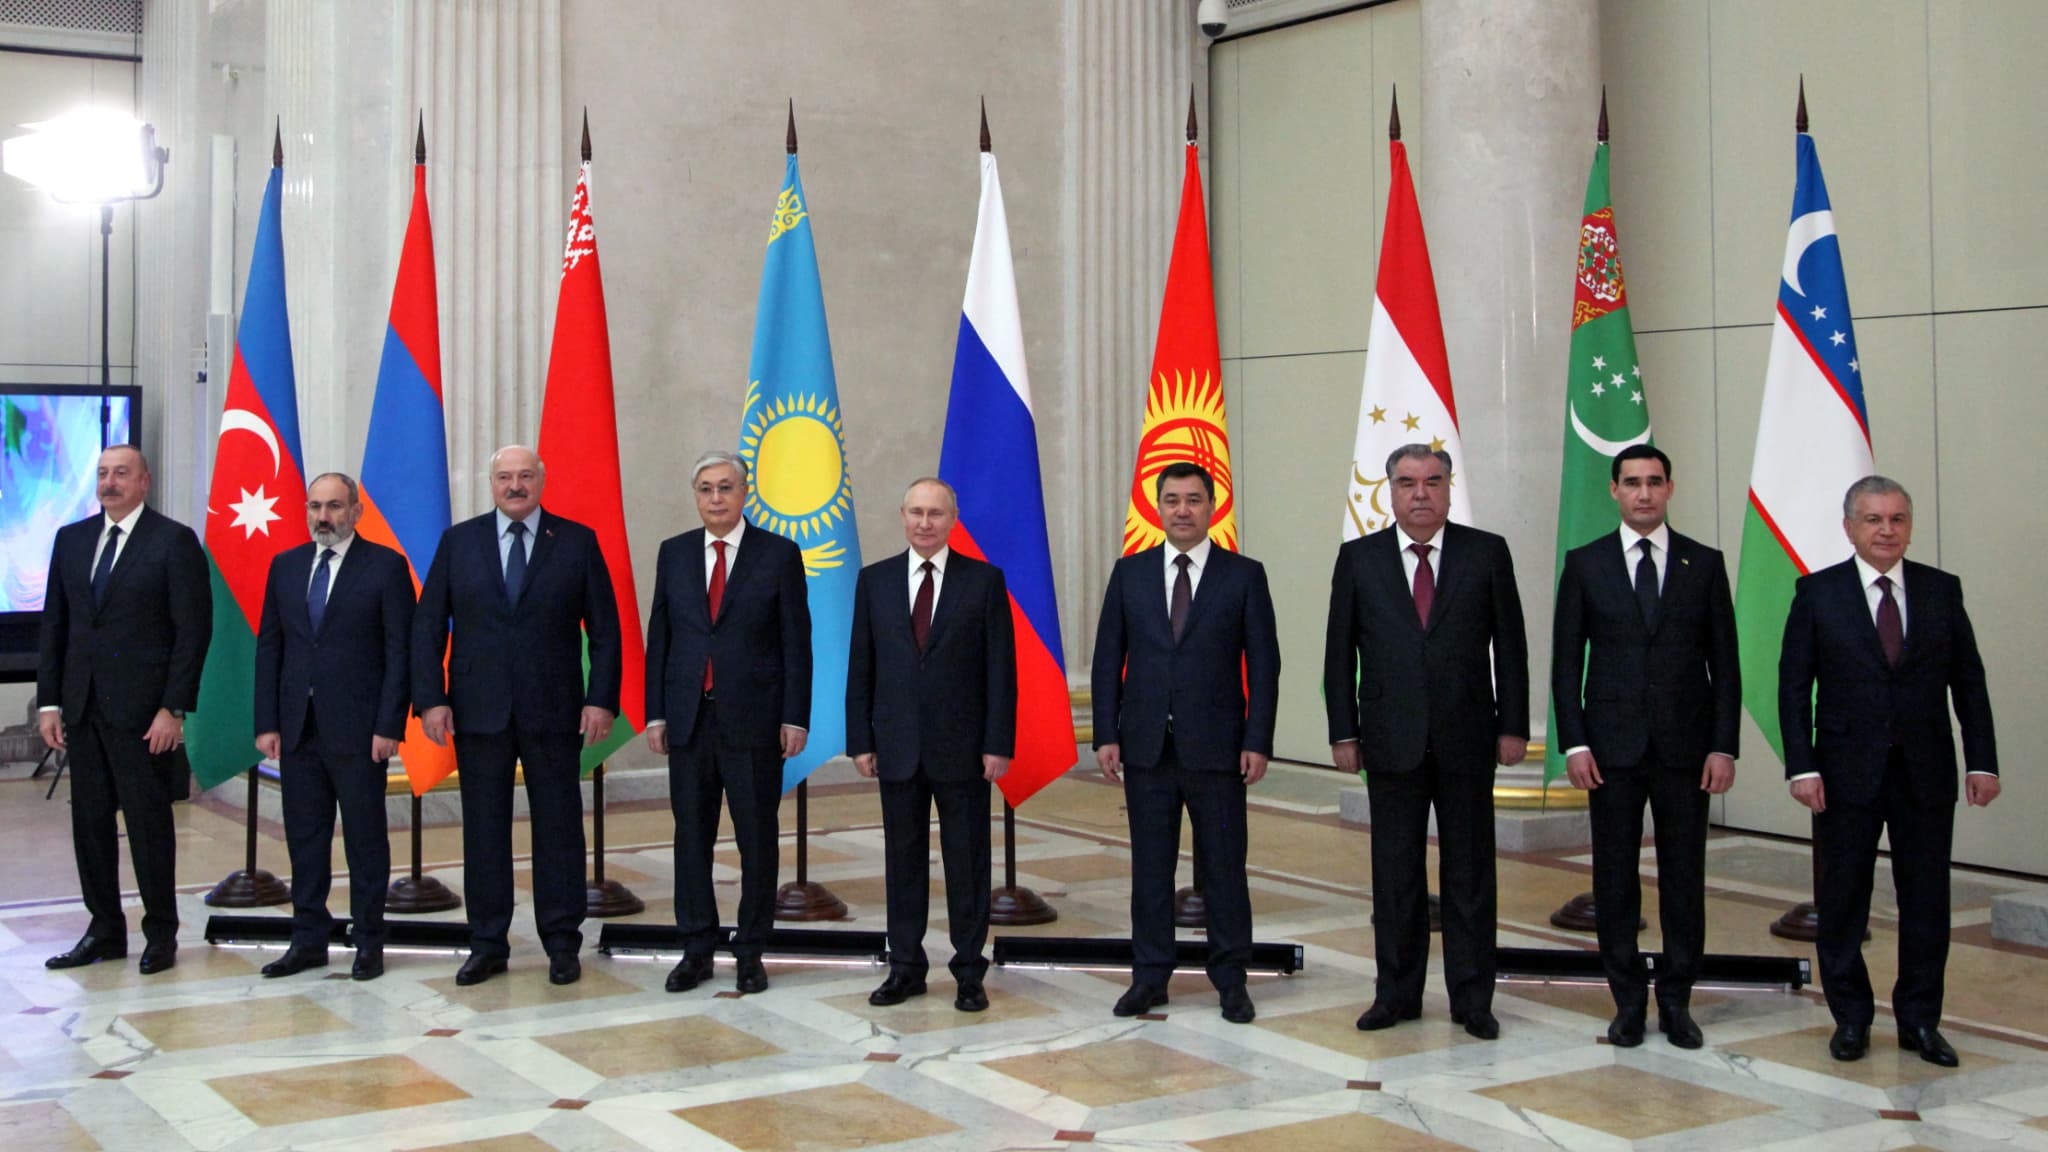 Wladimir Putin überreicht den Staatsoberhäuptern der Partnerländer acht symbolische Ringe